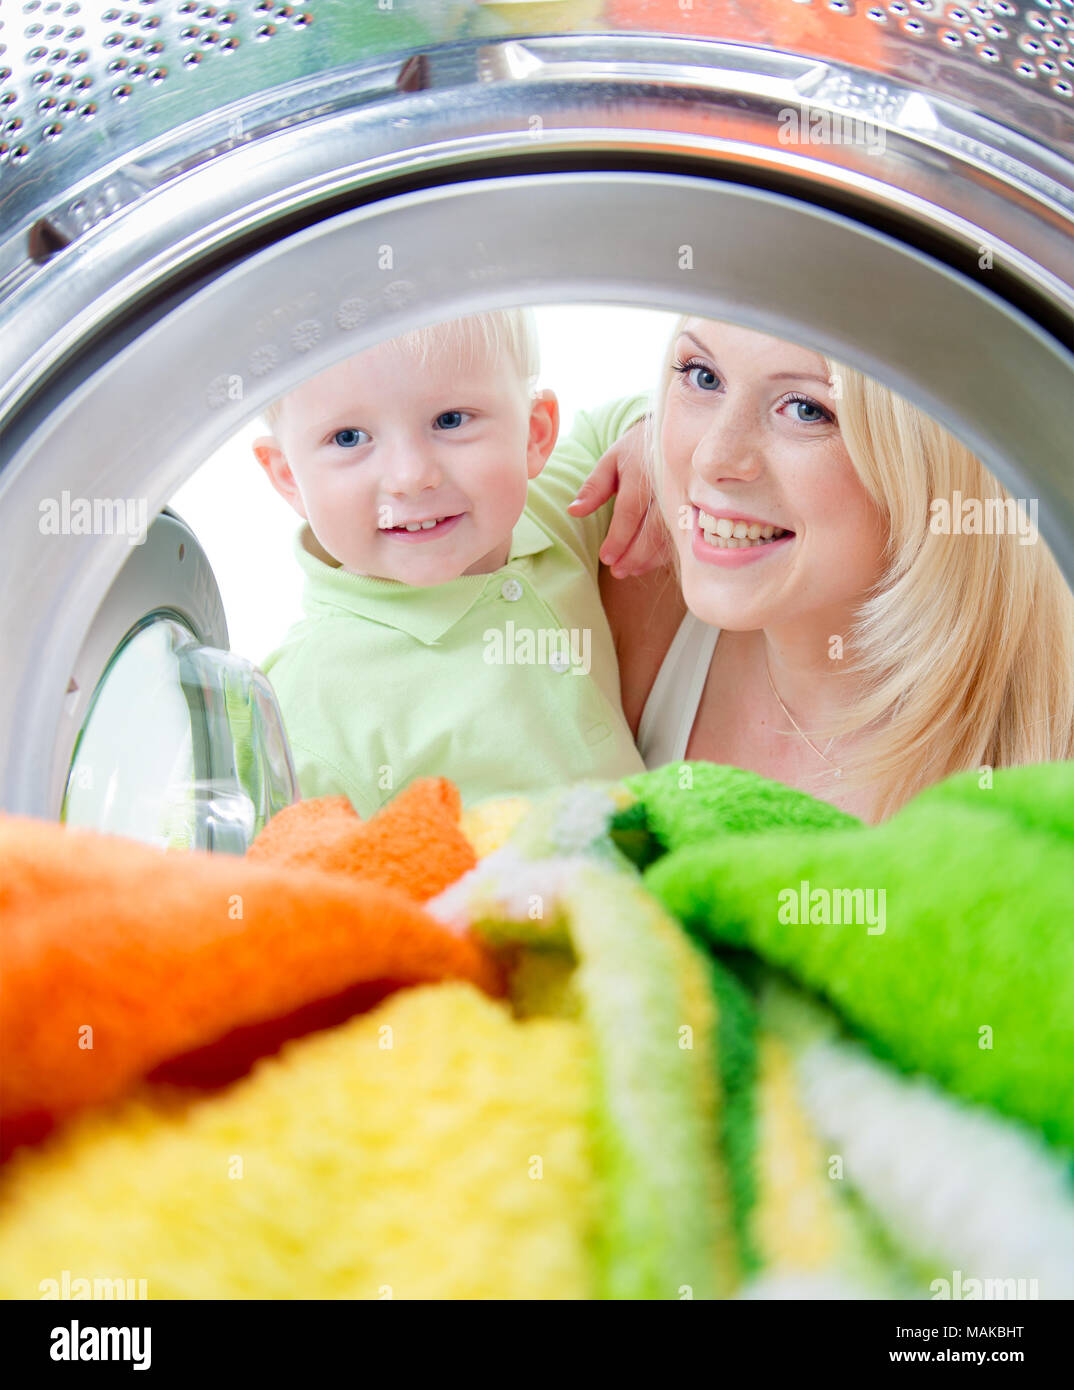 Mère et enfant heureux à l'intérieur de la machine de lavage avec intérêt Banque D'Images